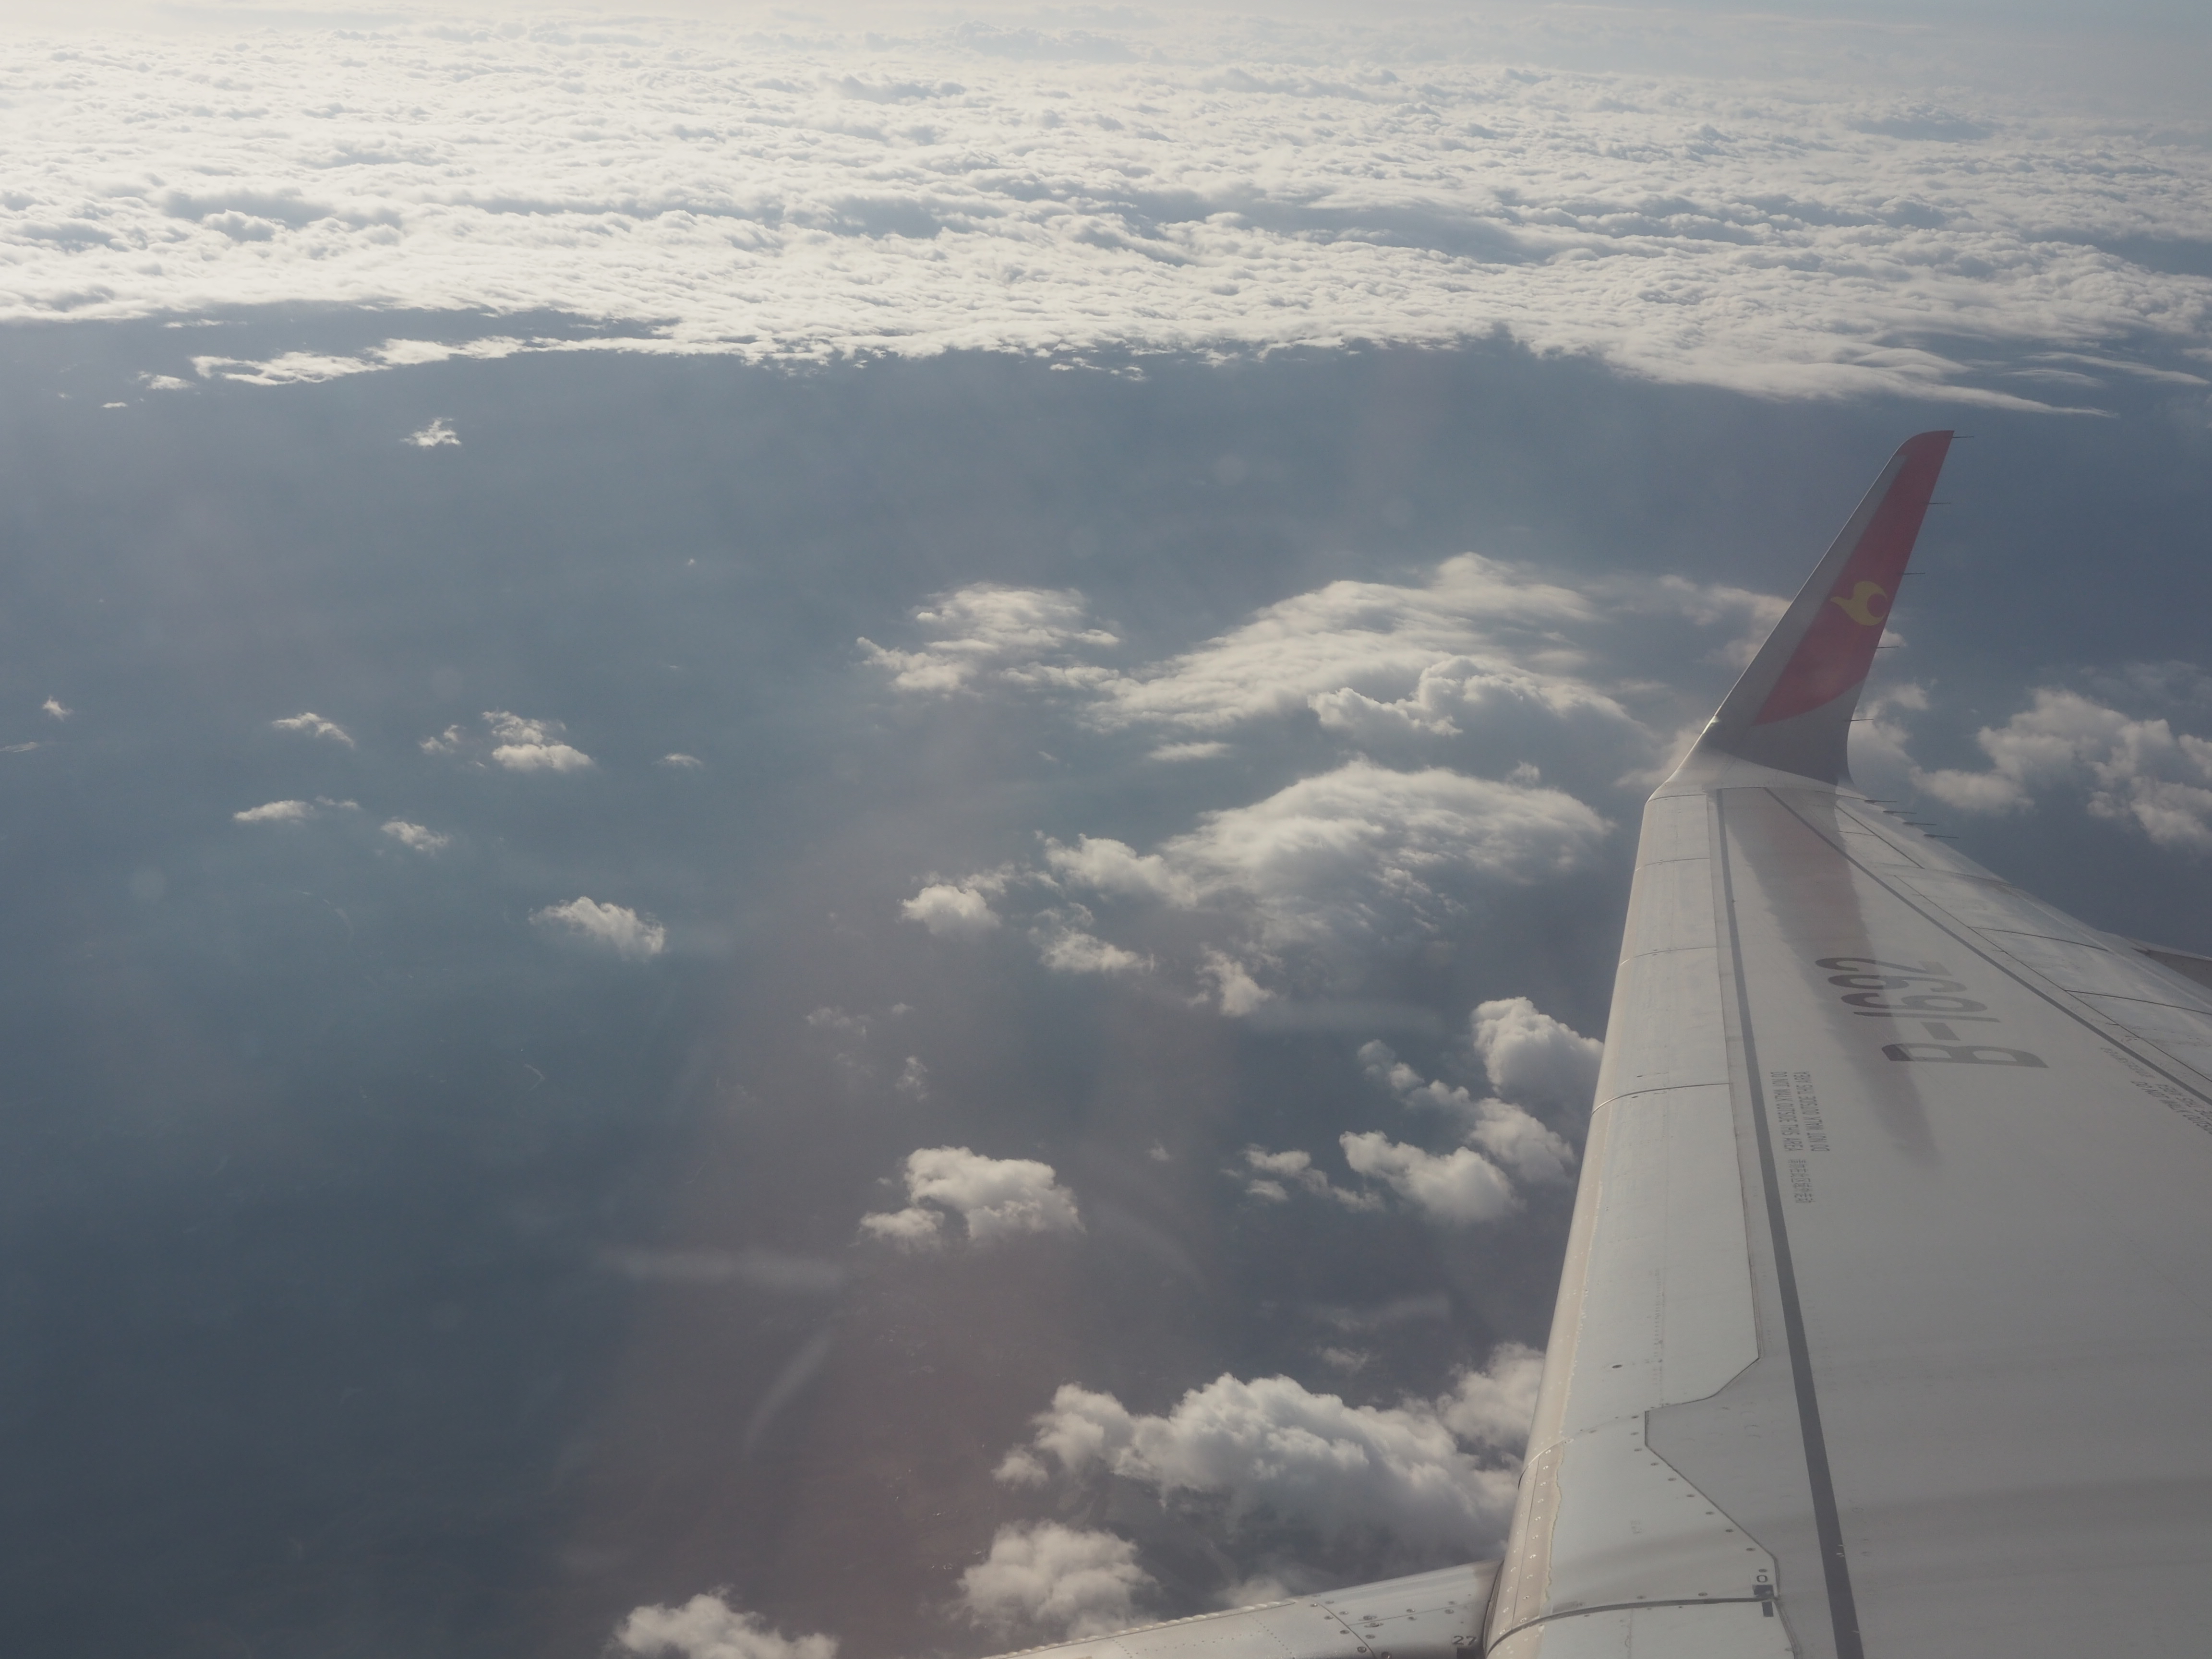 客机机翼与远处的云海交相辉映